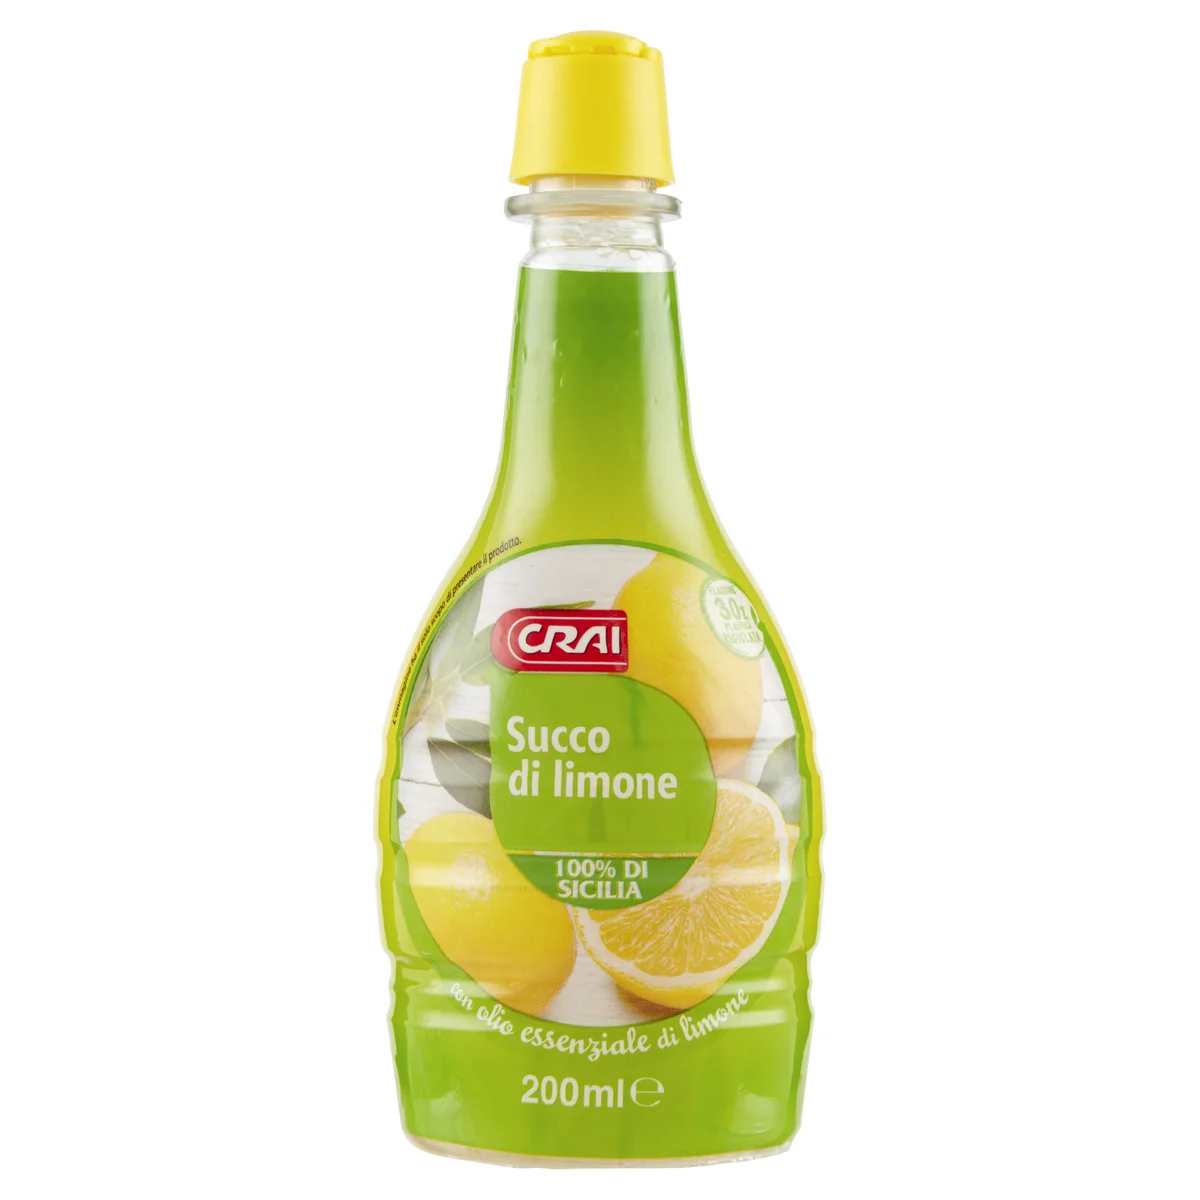 Succo di limone di Sicilia - Limmi